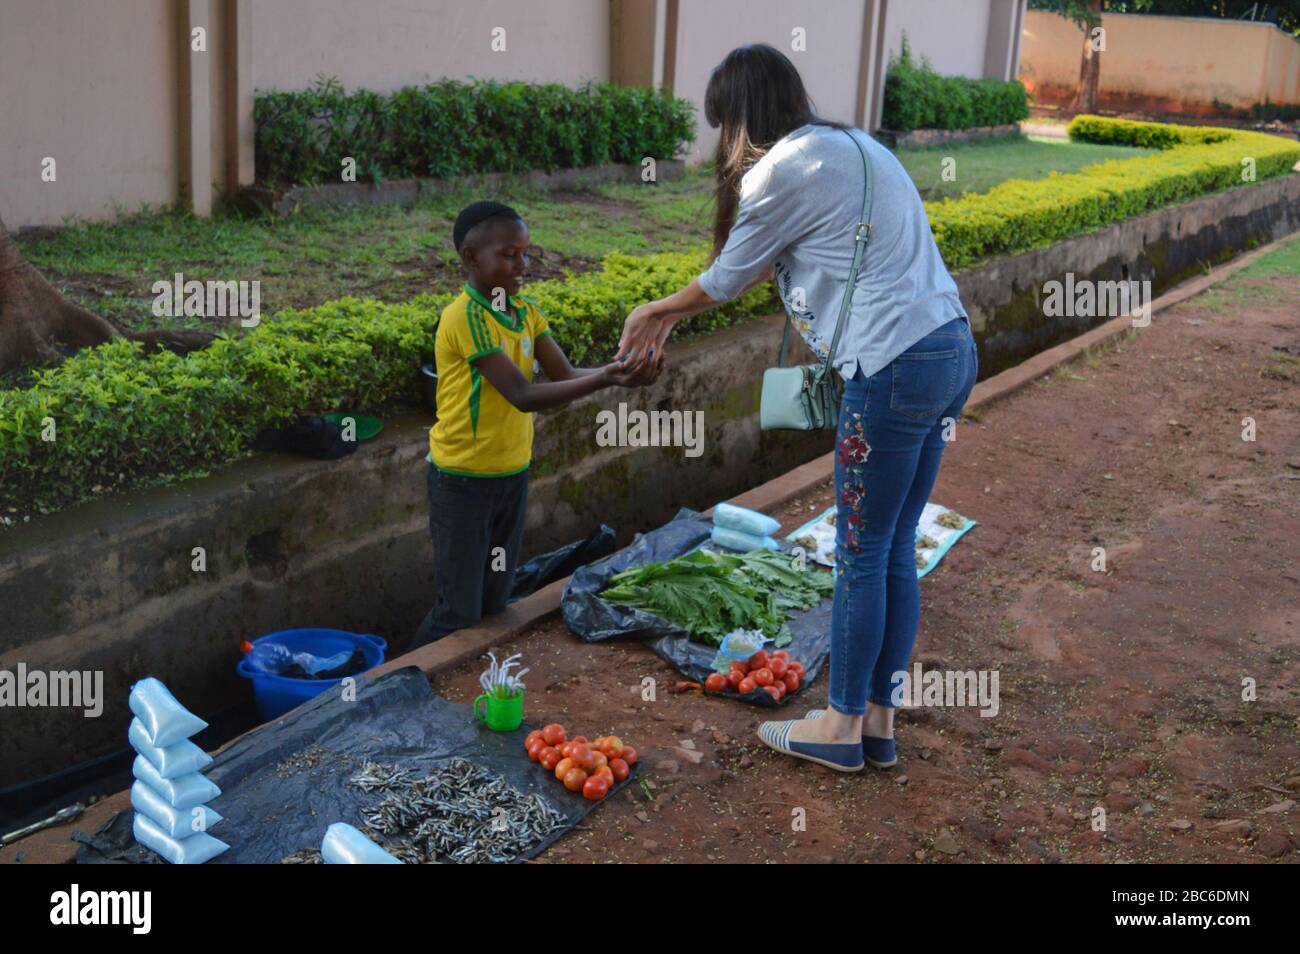 LILONGWE, MALAWI, AFRIKA - 2. APRIL 2018: Ein afrikanischer malawischer kleiner Junge verkauft Tomatos, Fisch und grüne Blätter entlang der Straße. Junge nimmt Kandi Stockfoto